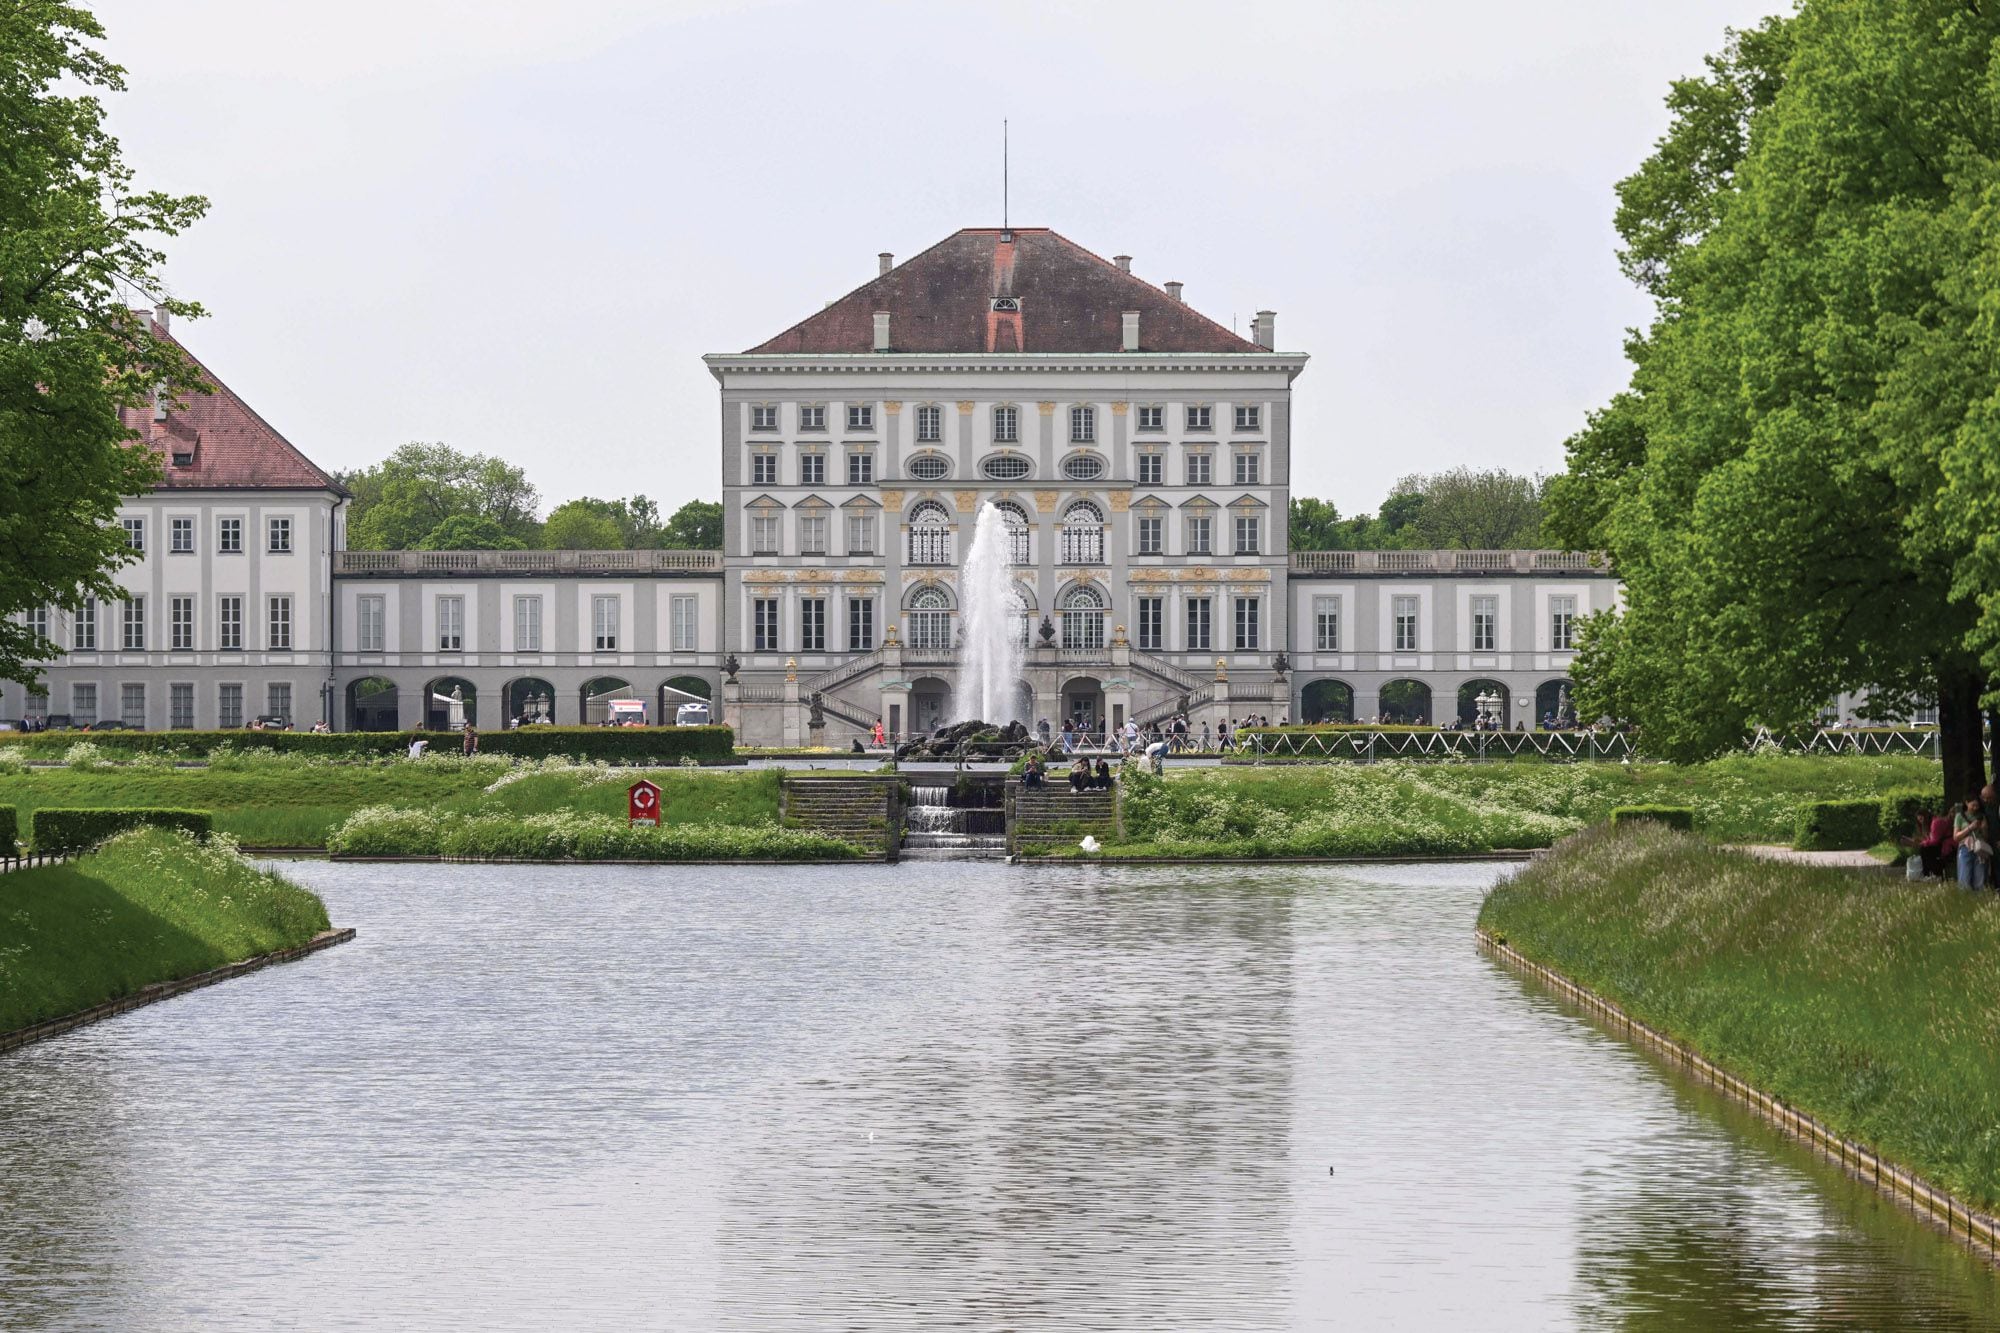 Una vista del palacio de Nymphenburg, uno de los sitios emblemáticos de Múnich, donde se organizó una multitudinaria fiesta privada al aire libre. 